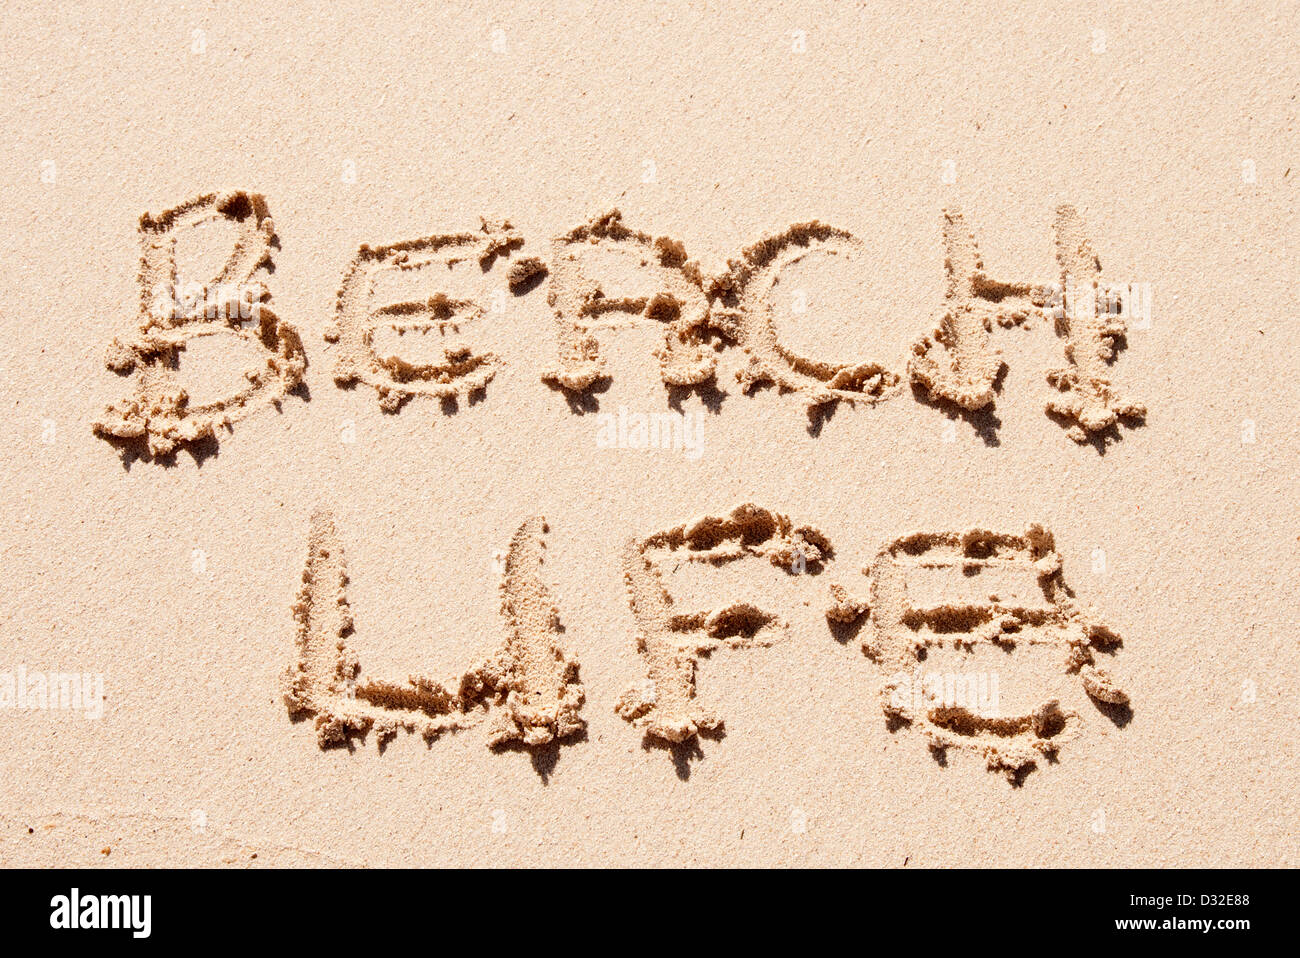 Strandleben in den Sand am Strand geschrieben Stockfoto